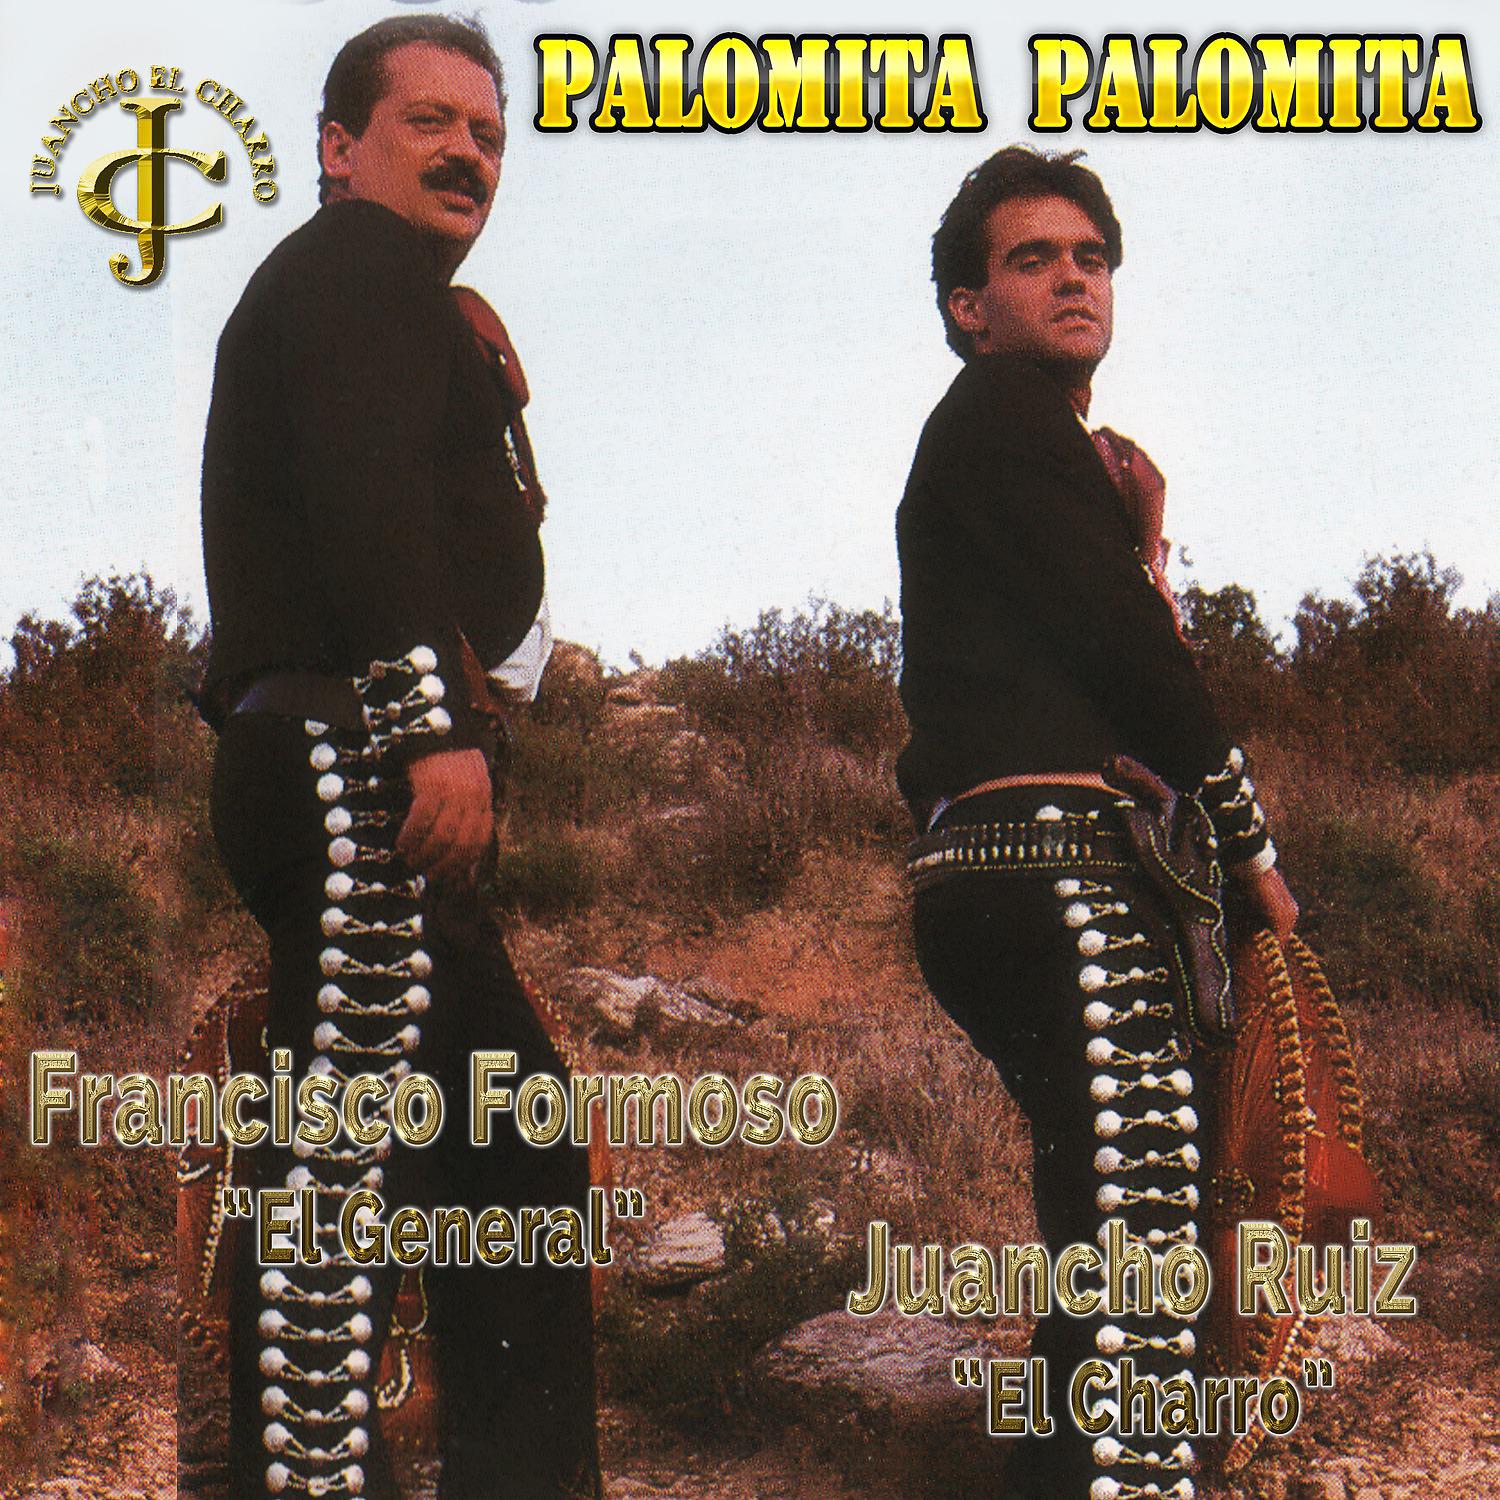 Постер альбома Palomita palomita